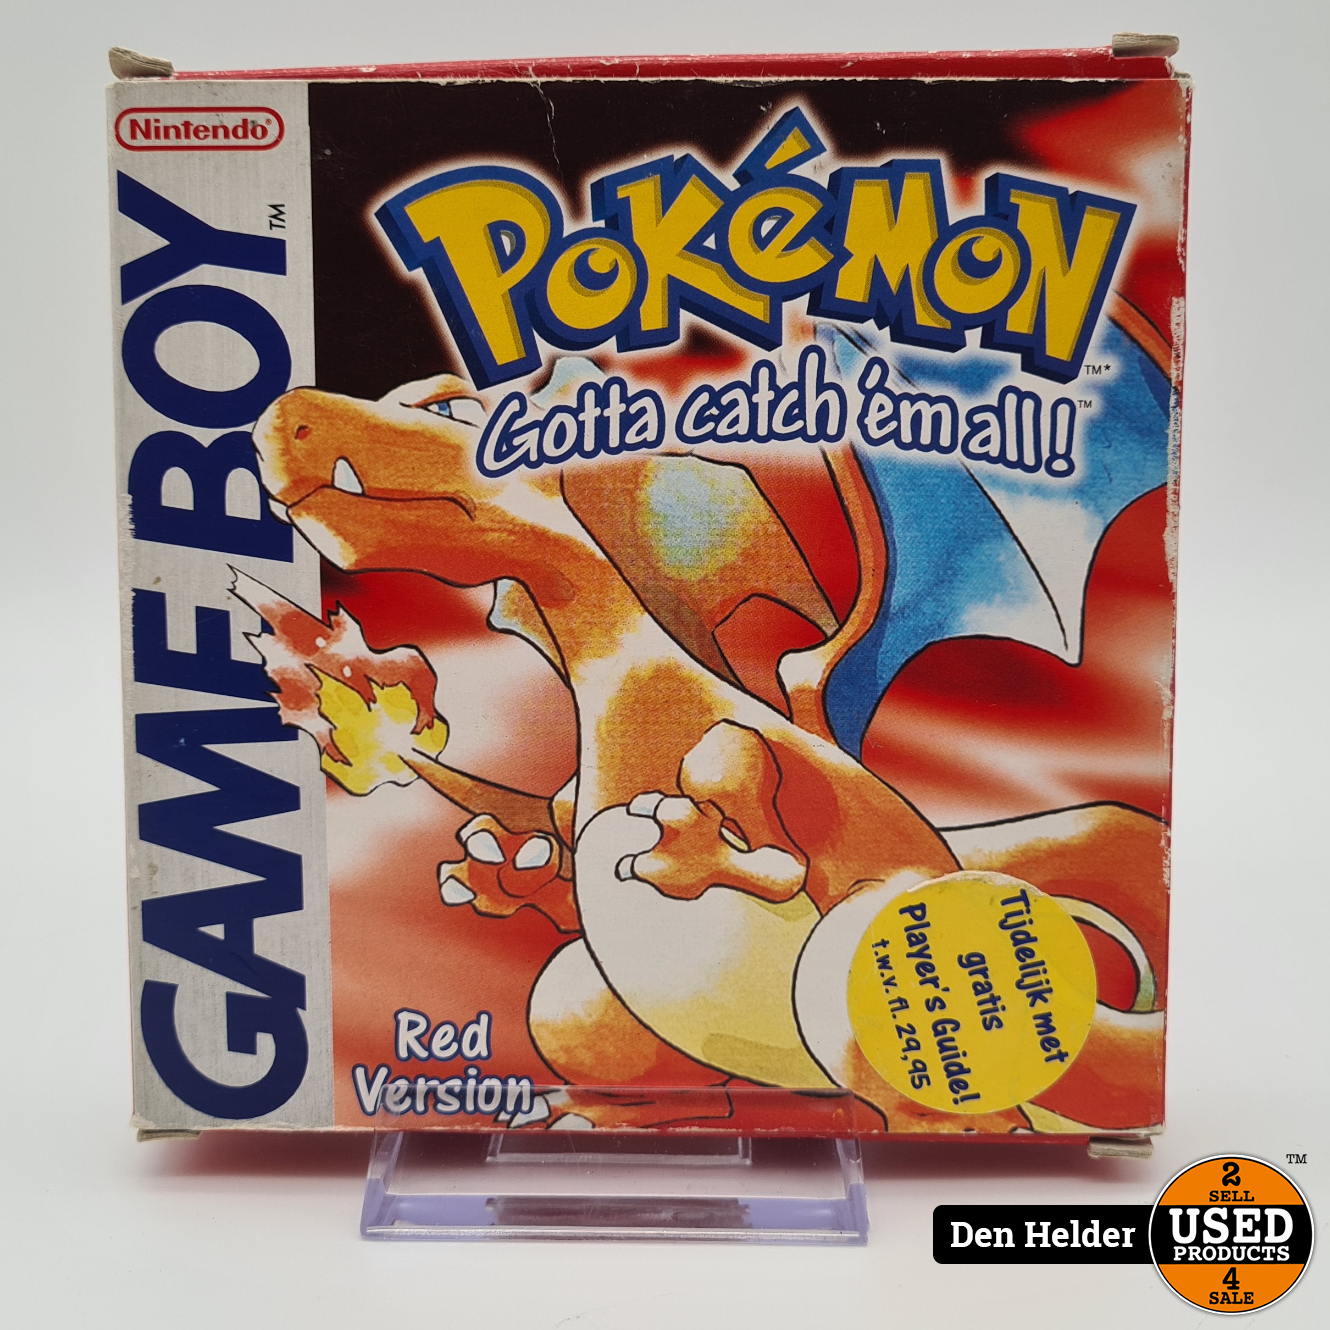 Pokemon Red Version Gameboy - Goede Staat - Used Den Helder